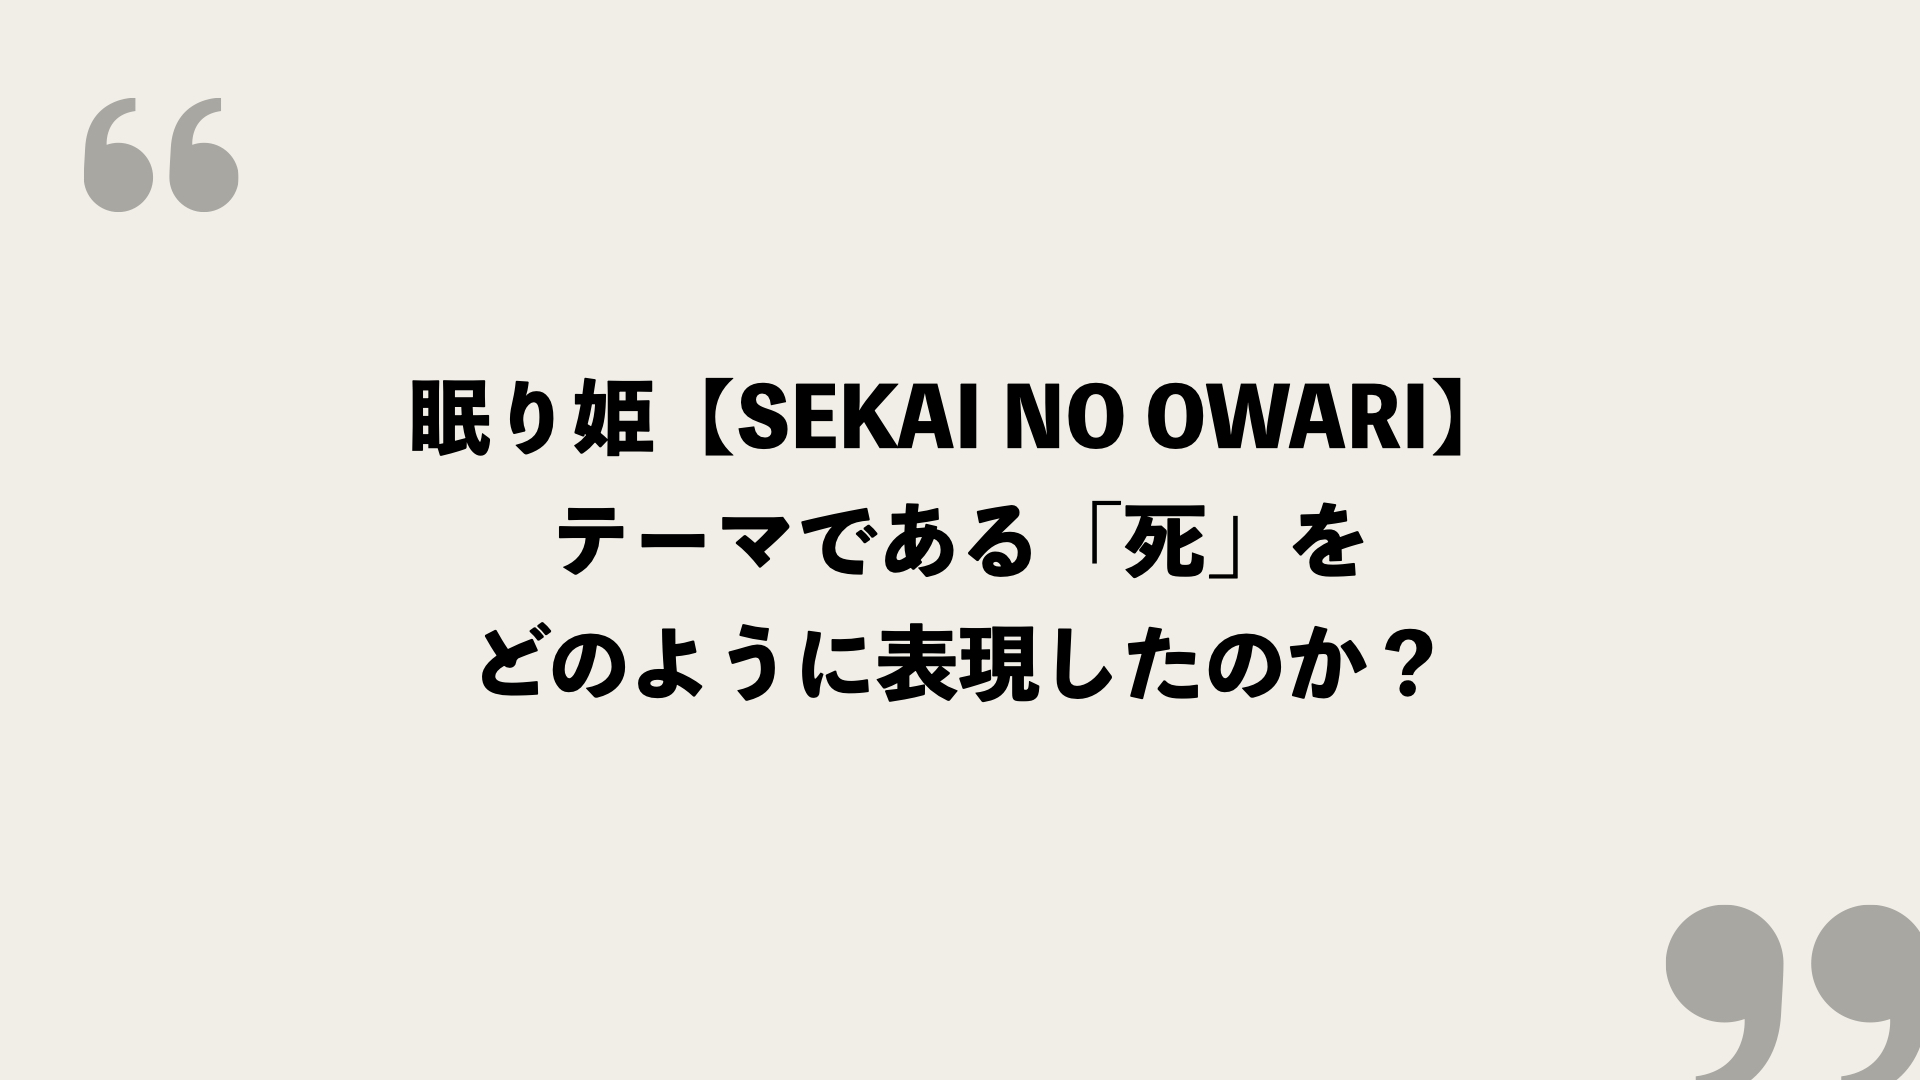 眠り姫 Sekai No Owari 歌詞の意味を考察 テーマである 死 をどのように表現したのか Framu Media